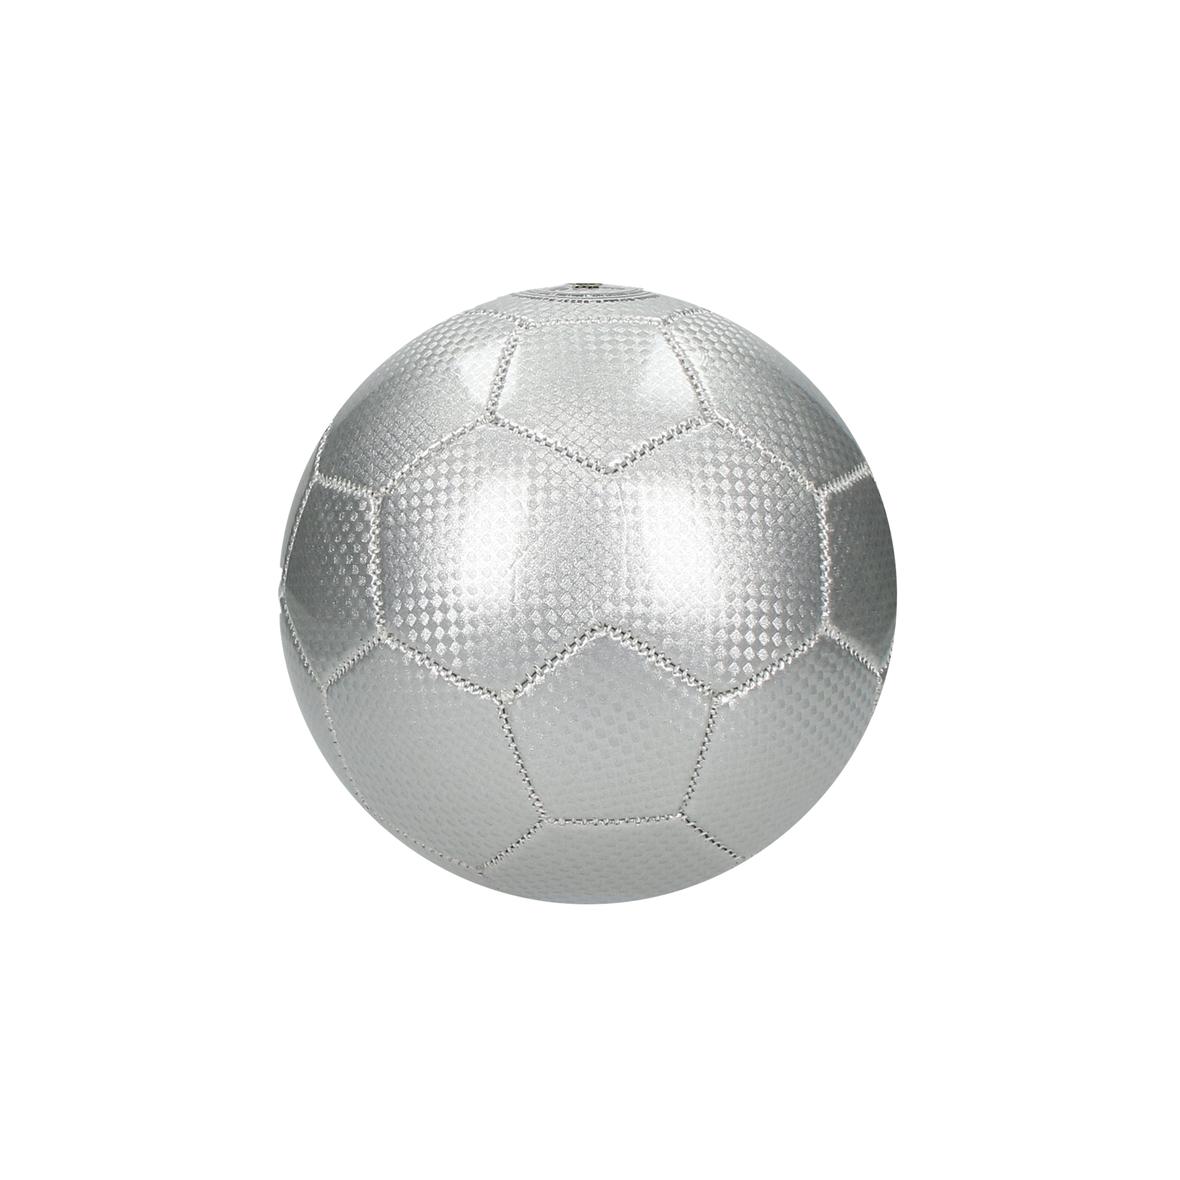 Balón de fútbol cosido a máquina de tamaño 2 color plata - Manresa